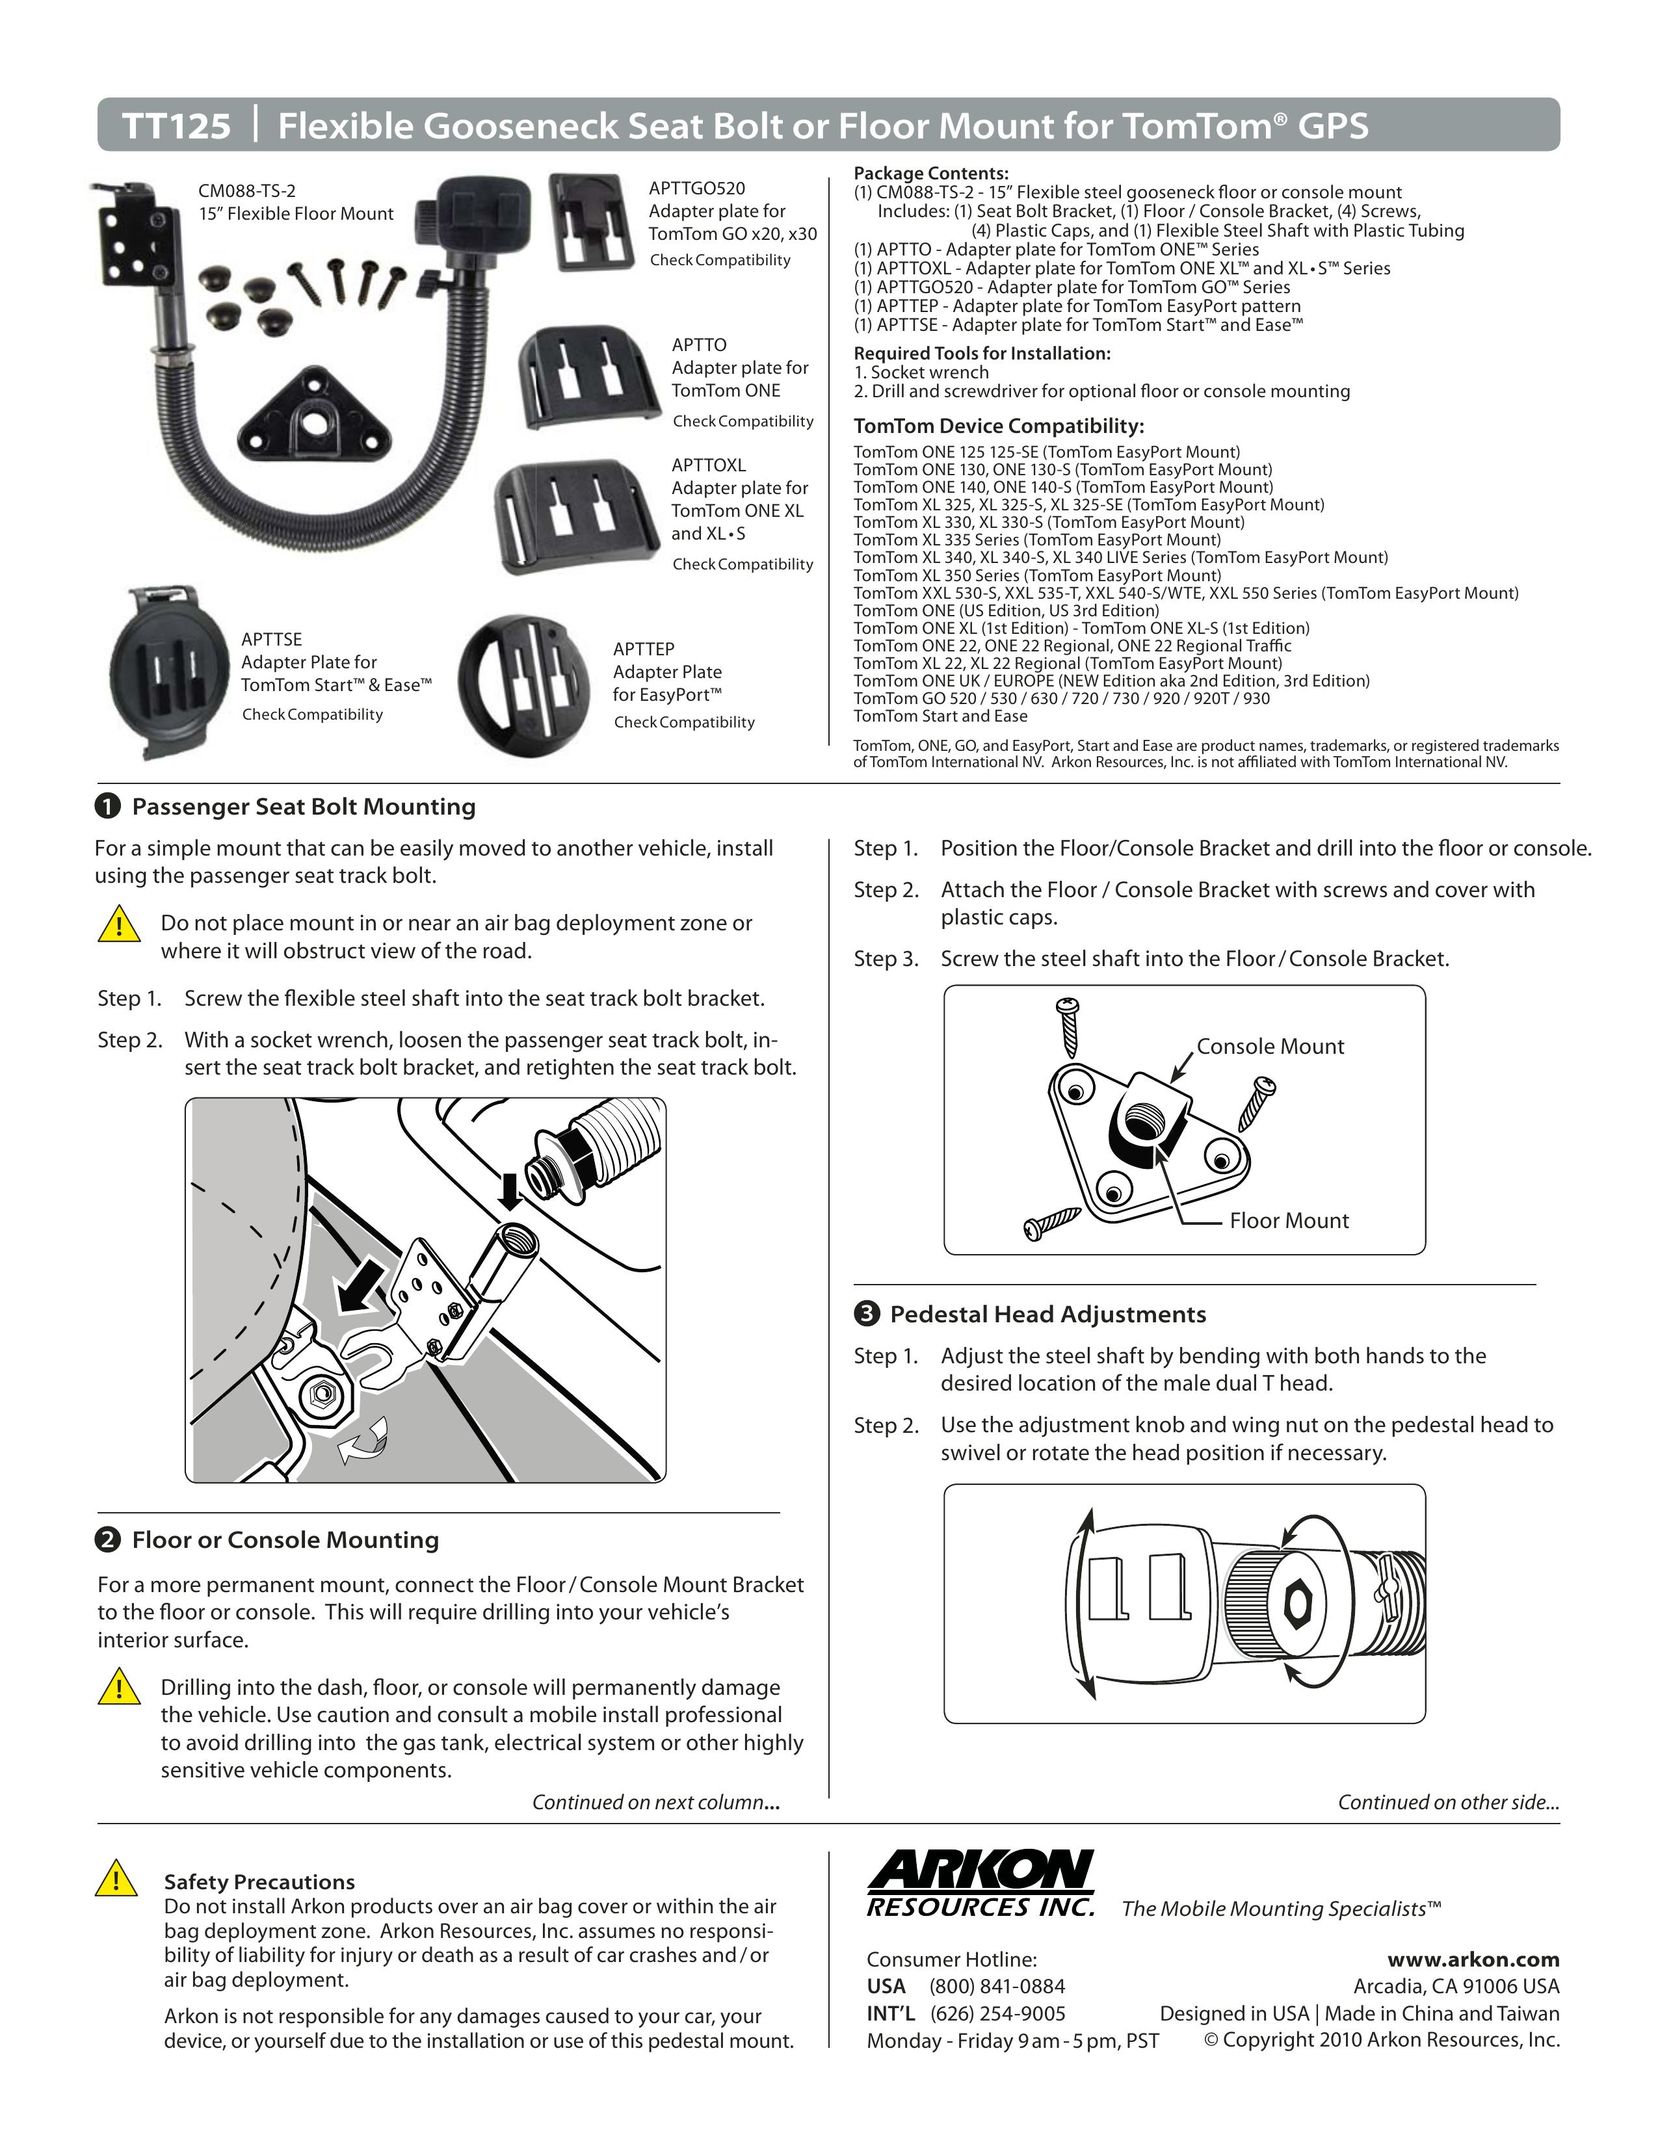 Binatone TT125 Flooring User Manual